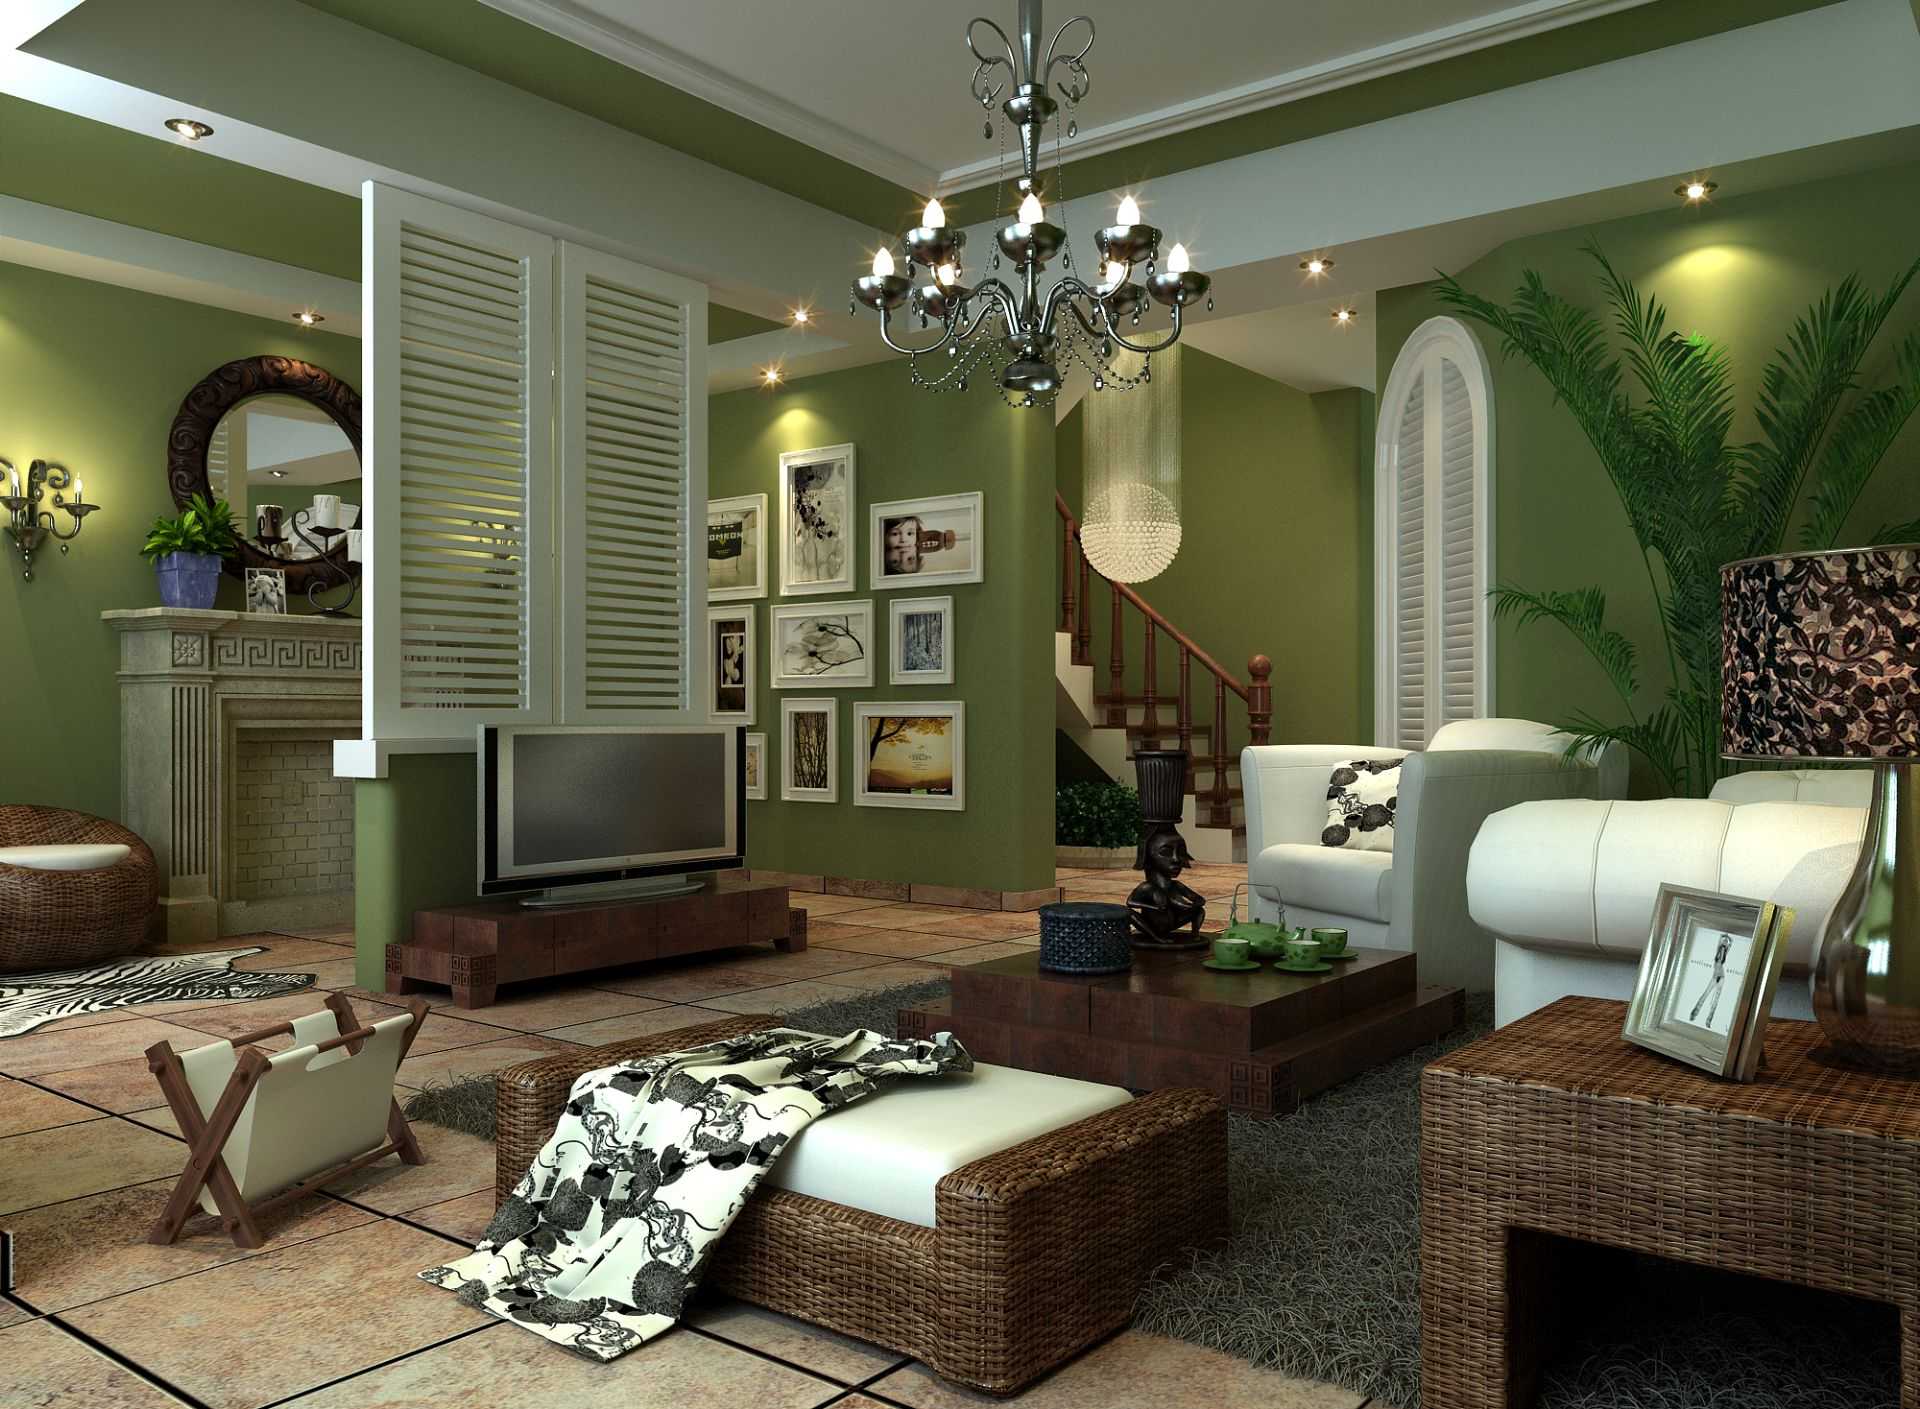 Оливковый цвет в интерьере. примеры дизайна квартир в оливковой гамме